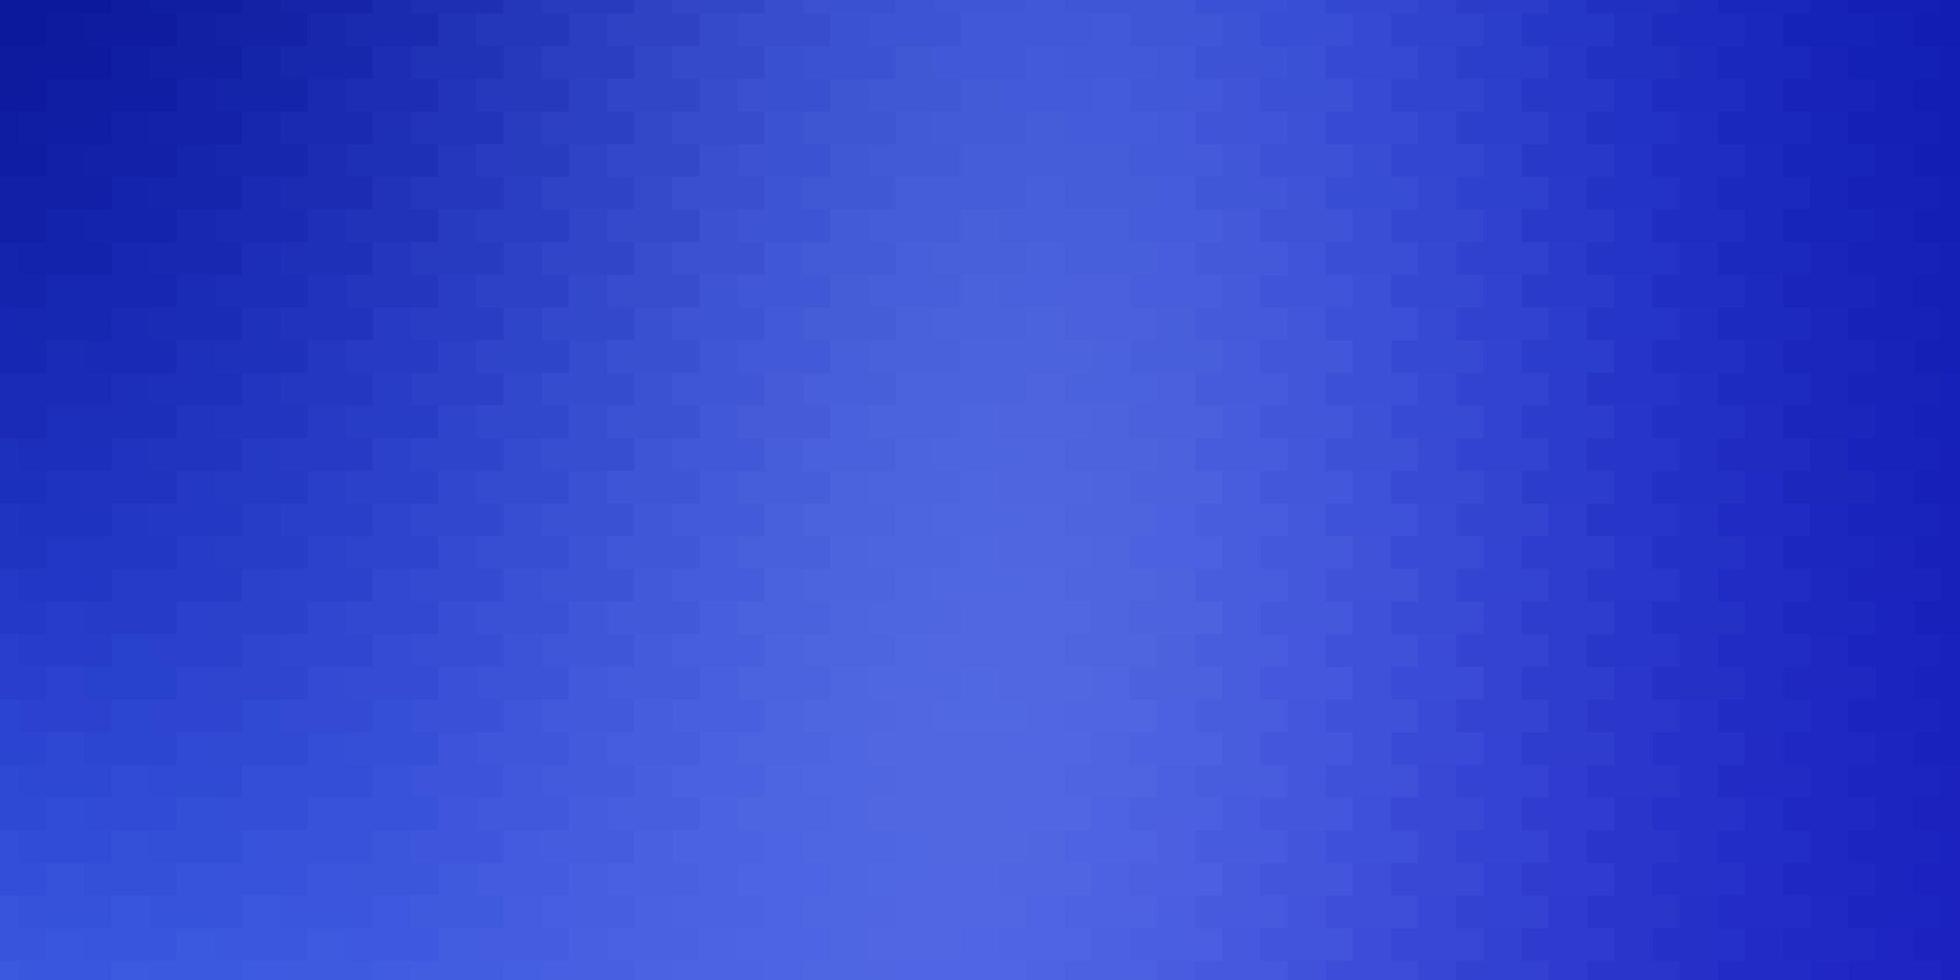 textura de vetor azul claro em ilustração colorida de estilo retangular com retângulos gradientes e modelo de quadrados para celulares